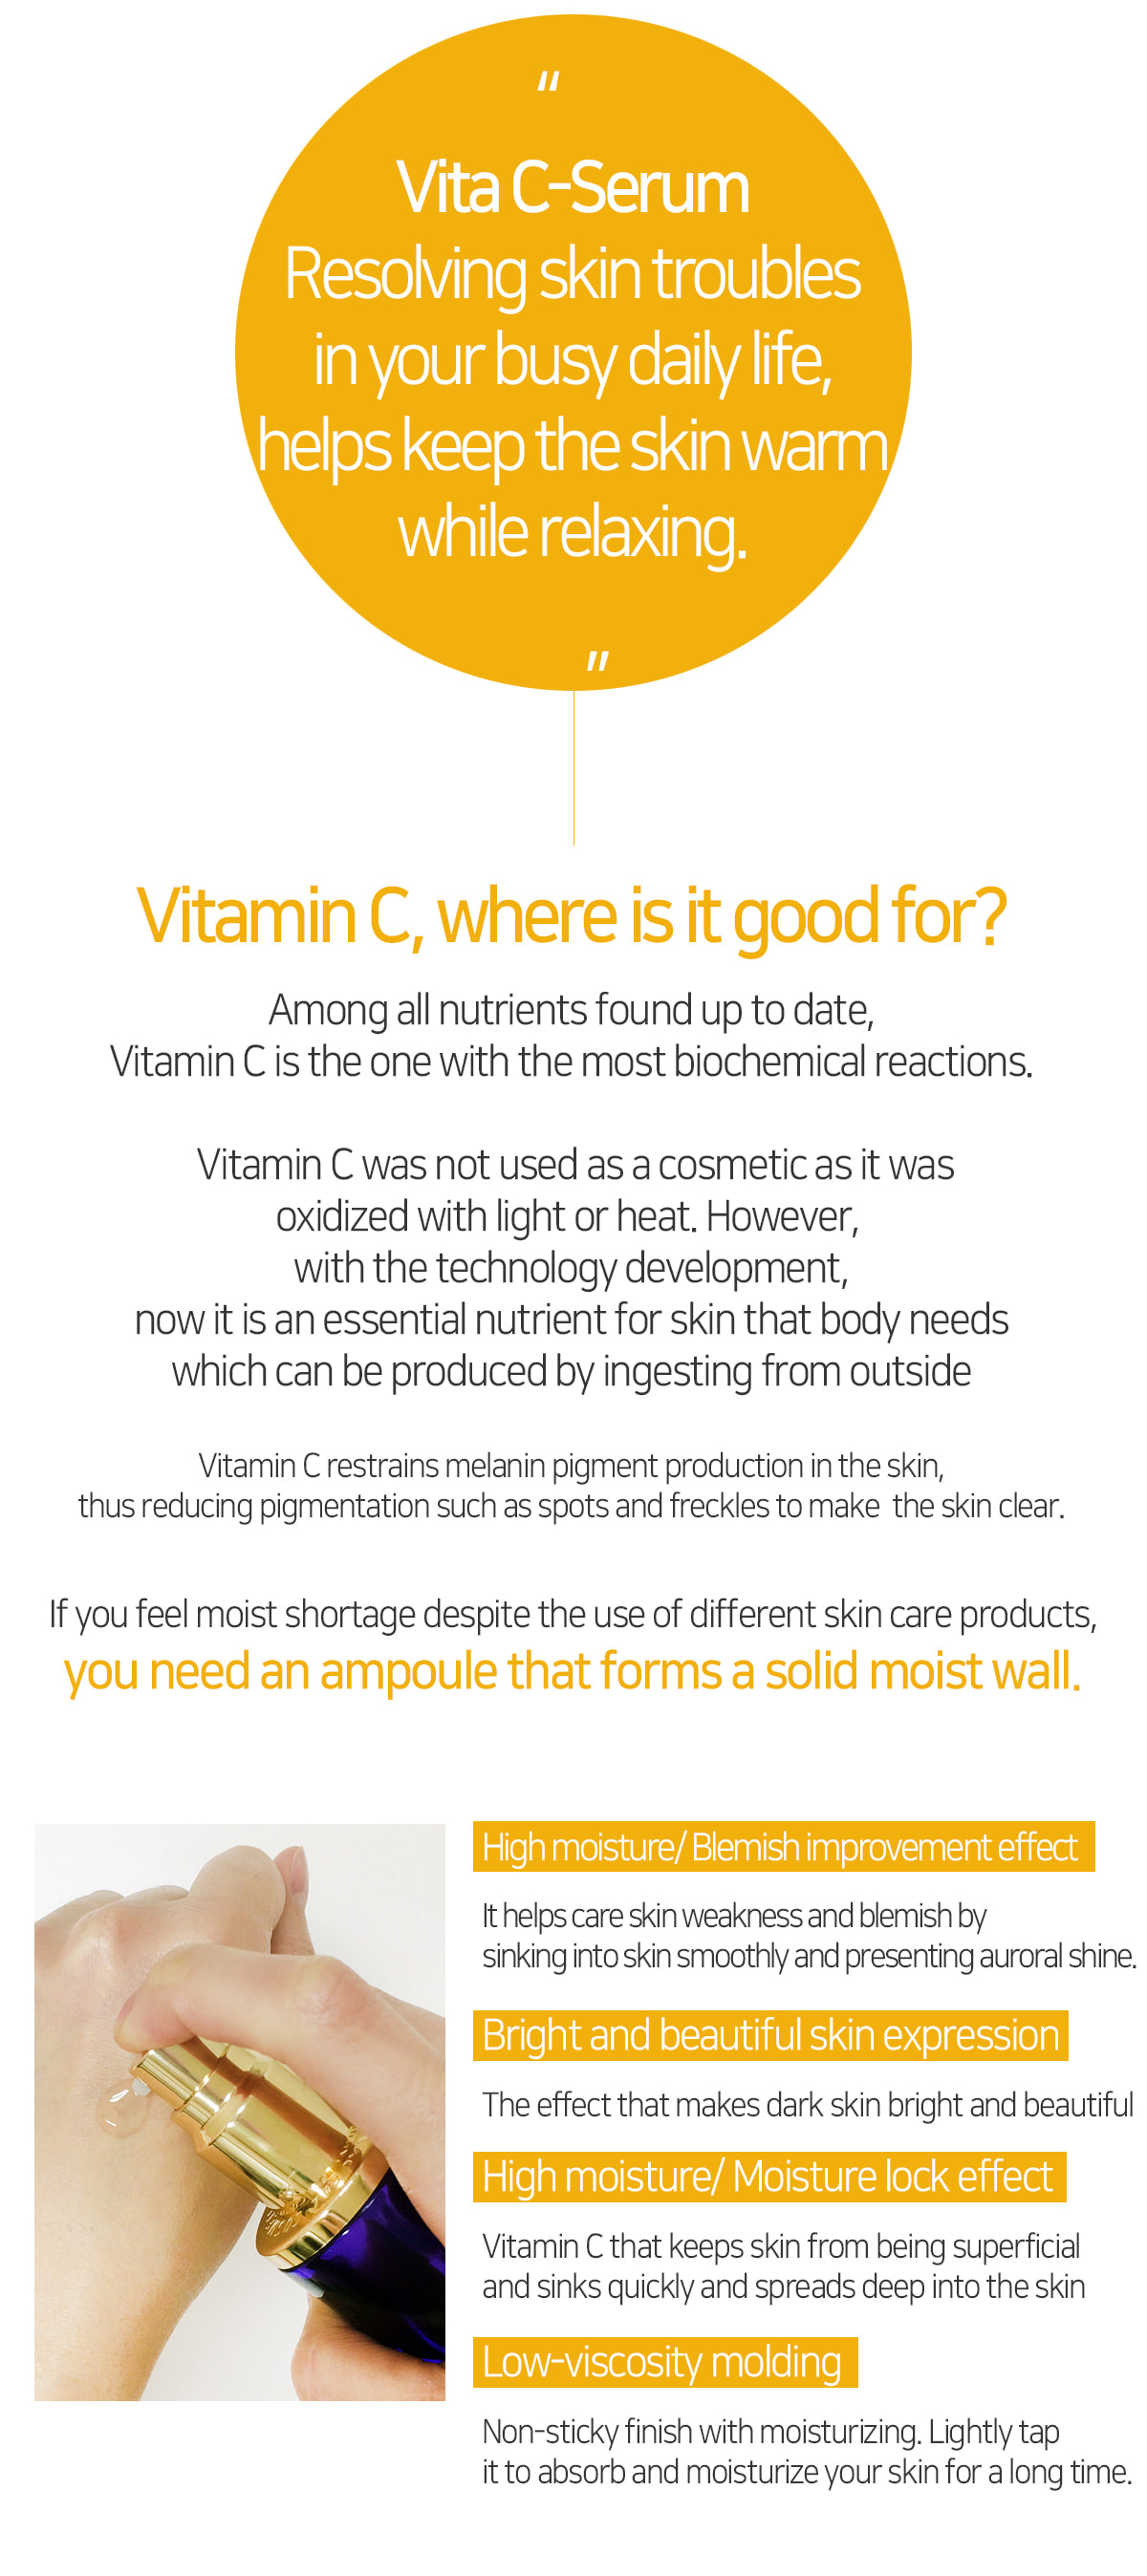 Vita C Serum 30ml · Vitamin C whitening eects improve skin color
· Enhance skin barrier and improve skin texture
· Smooth and rough skin treatment